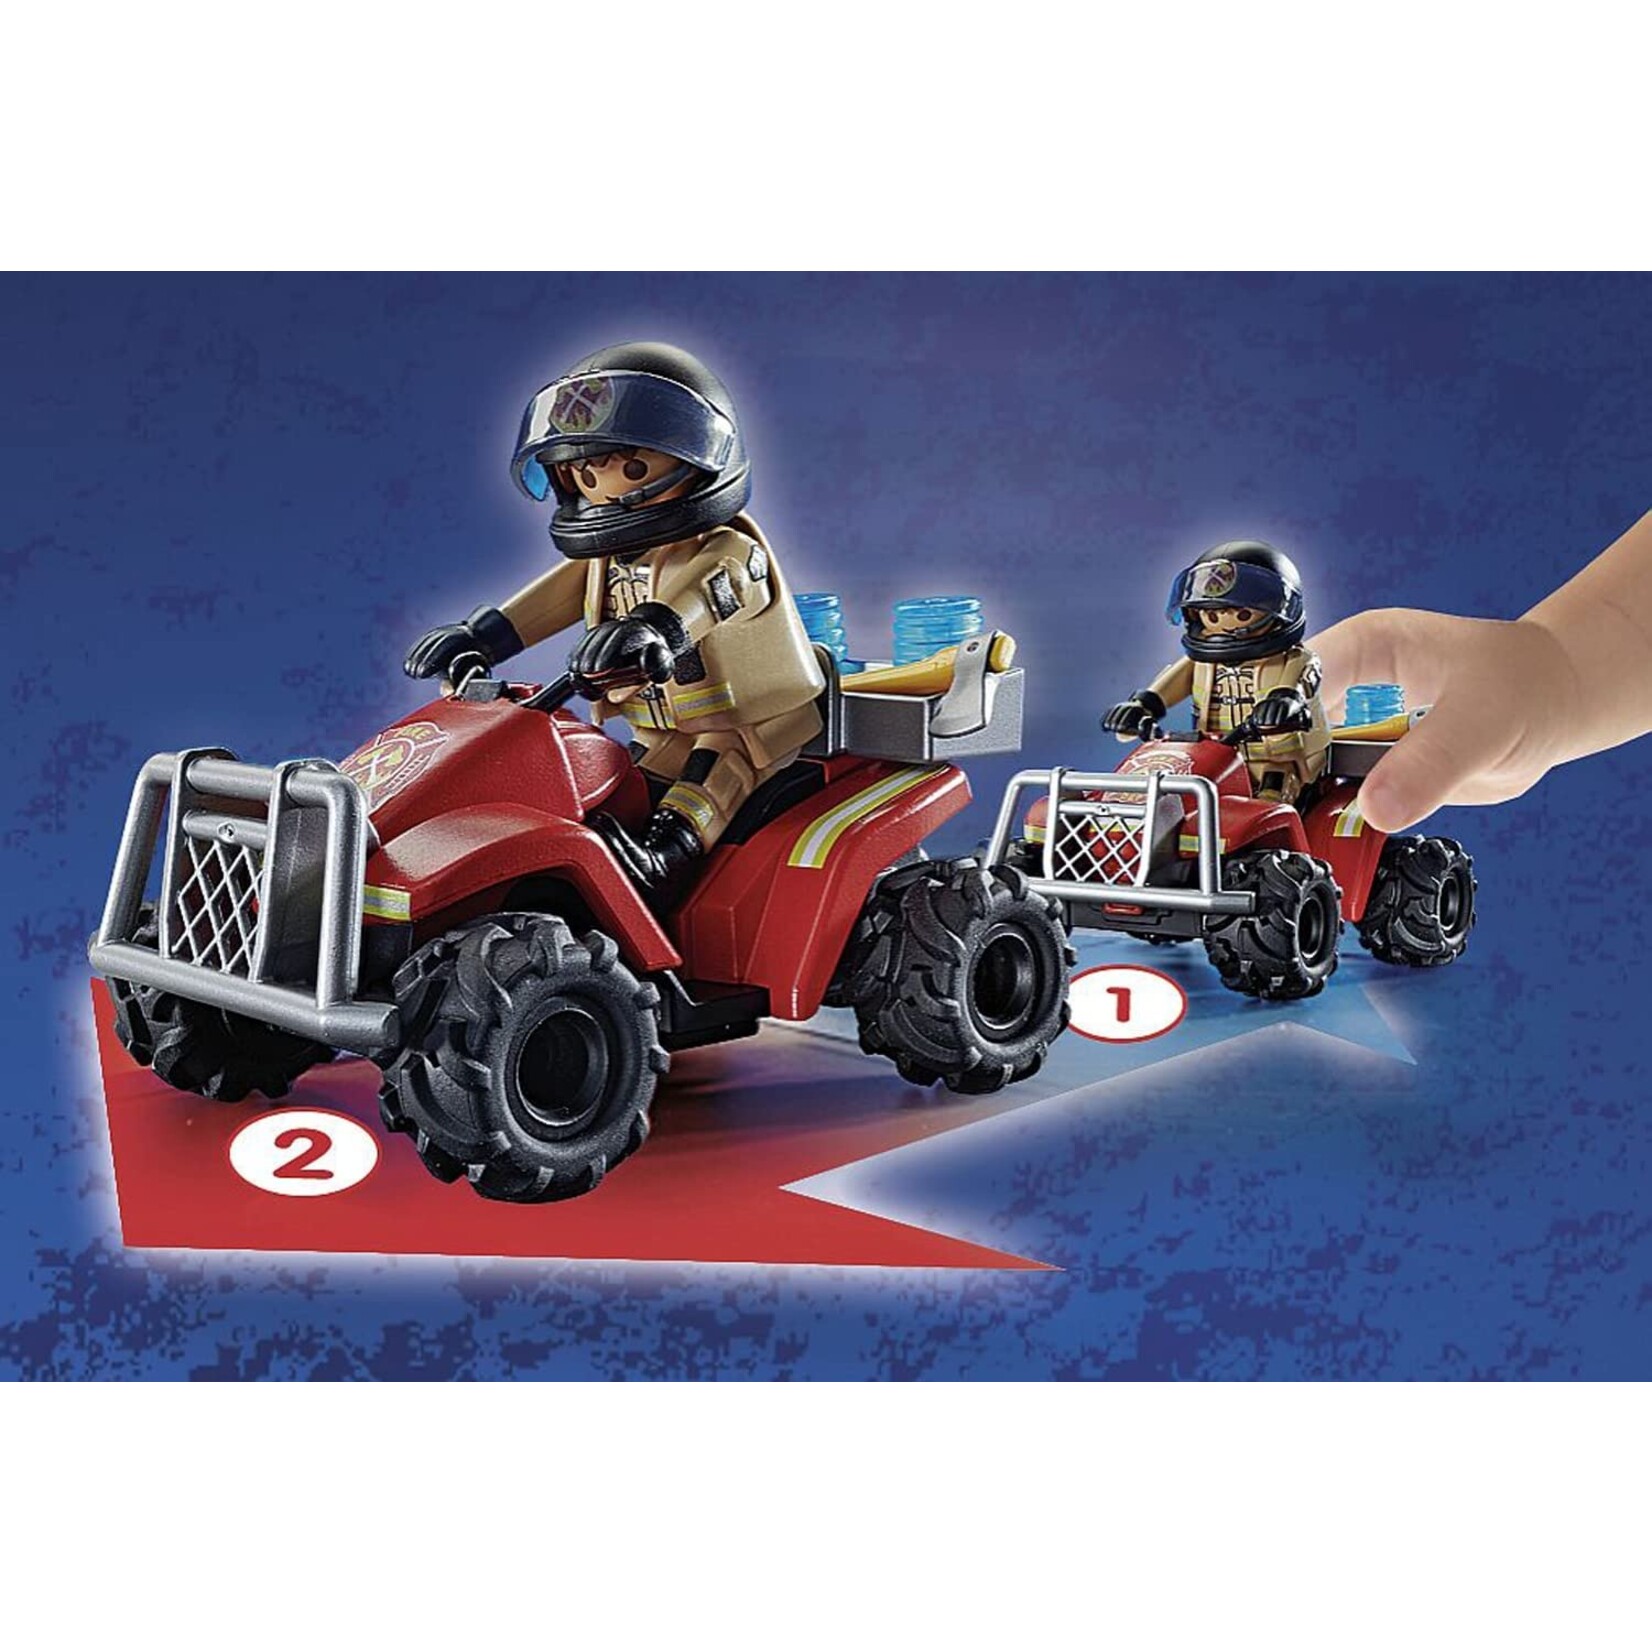 Playmobil Fire Rescue Quad